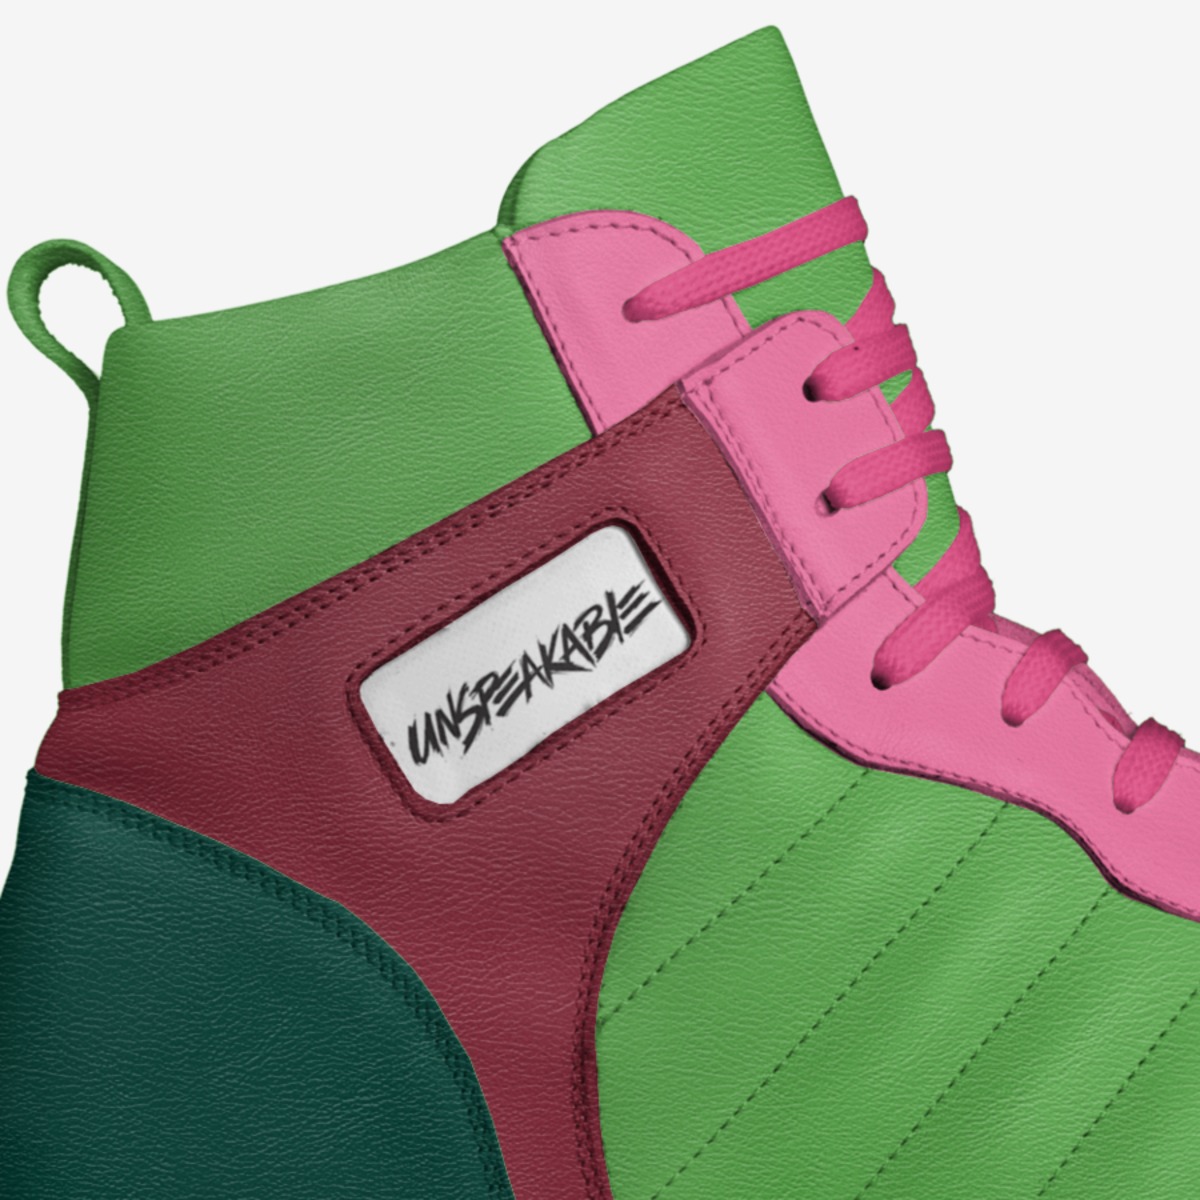 Unspeakable | A Custom Shoe concept by Noah Mcpherson